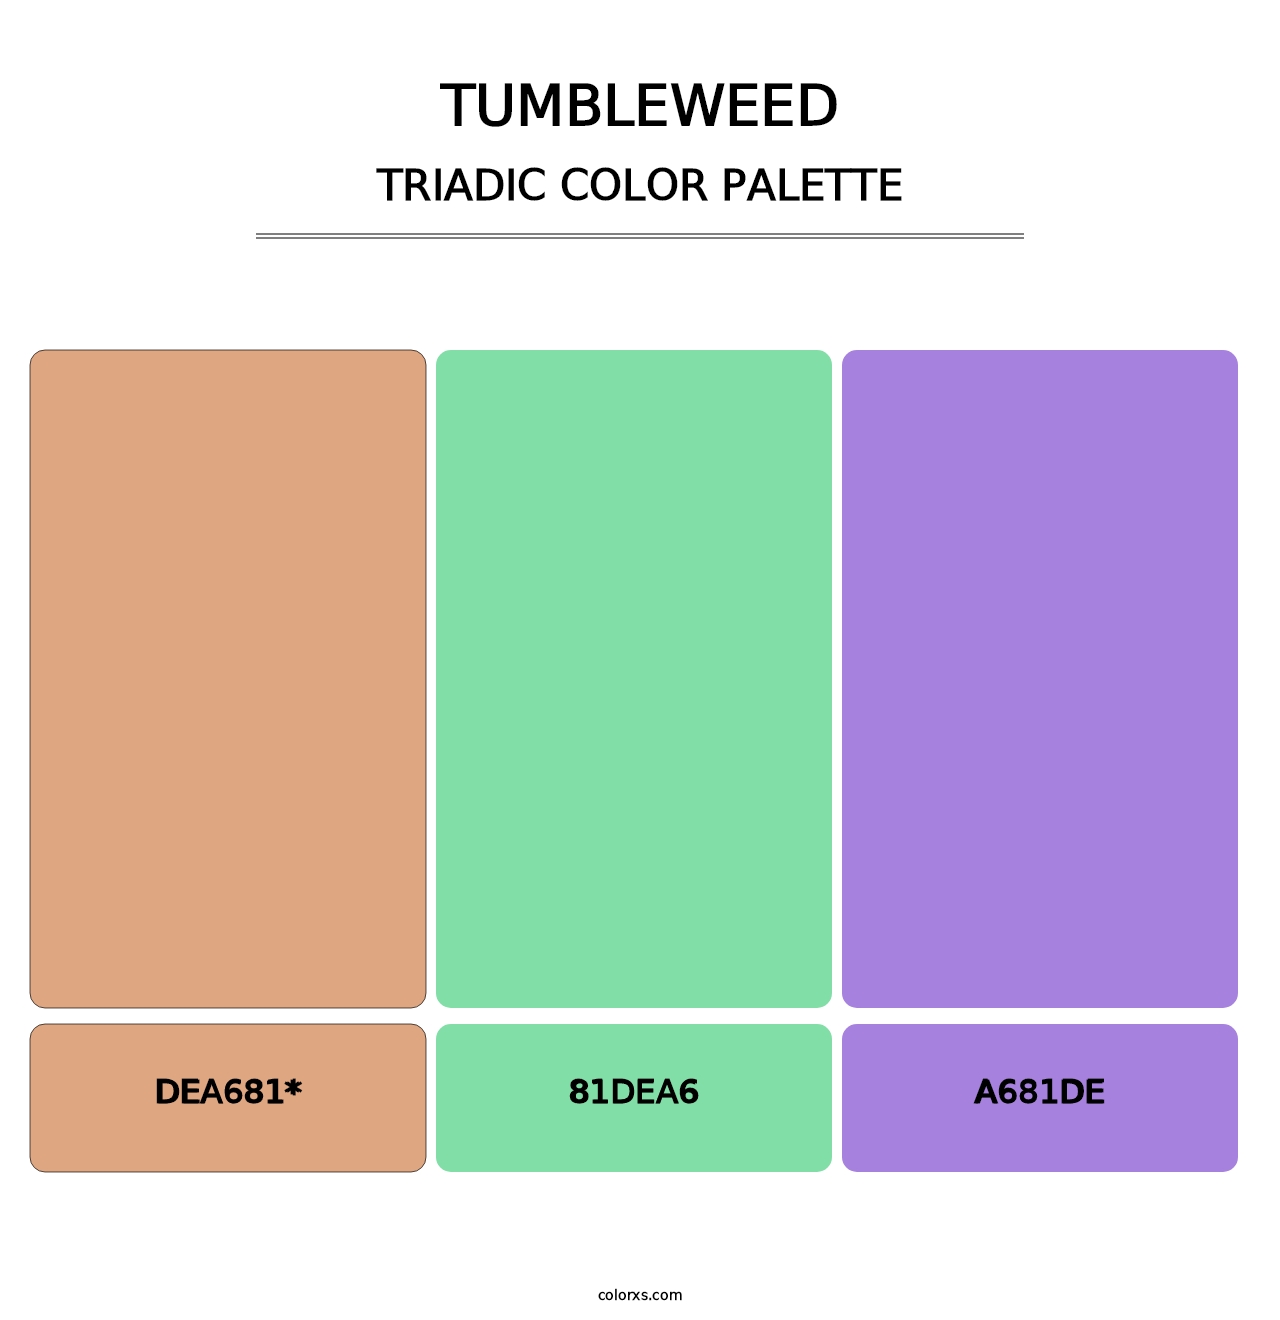 Tumbleweed - Triadic Color Palette